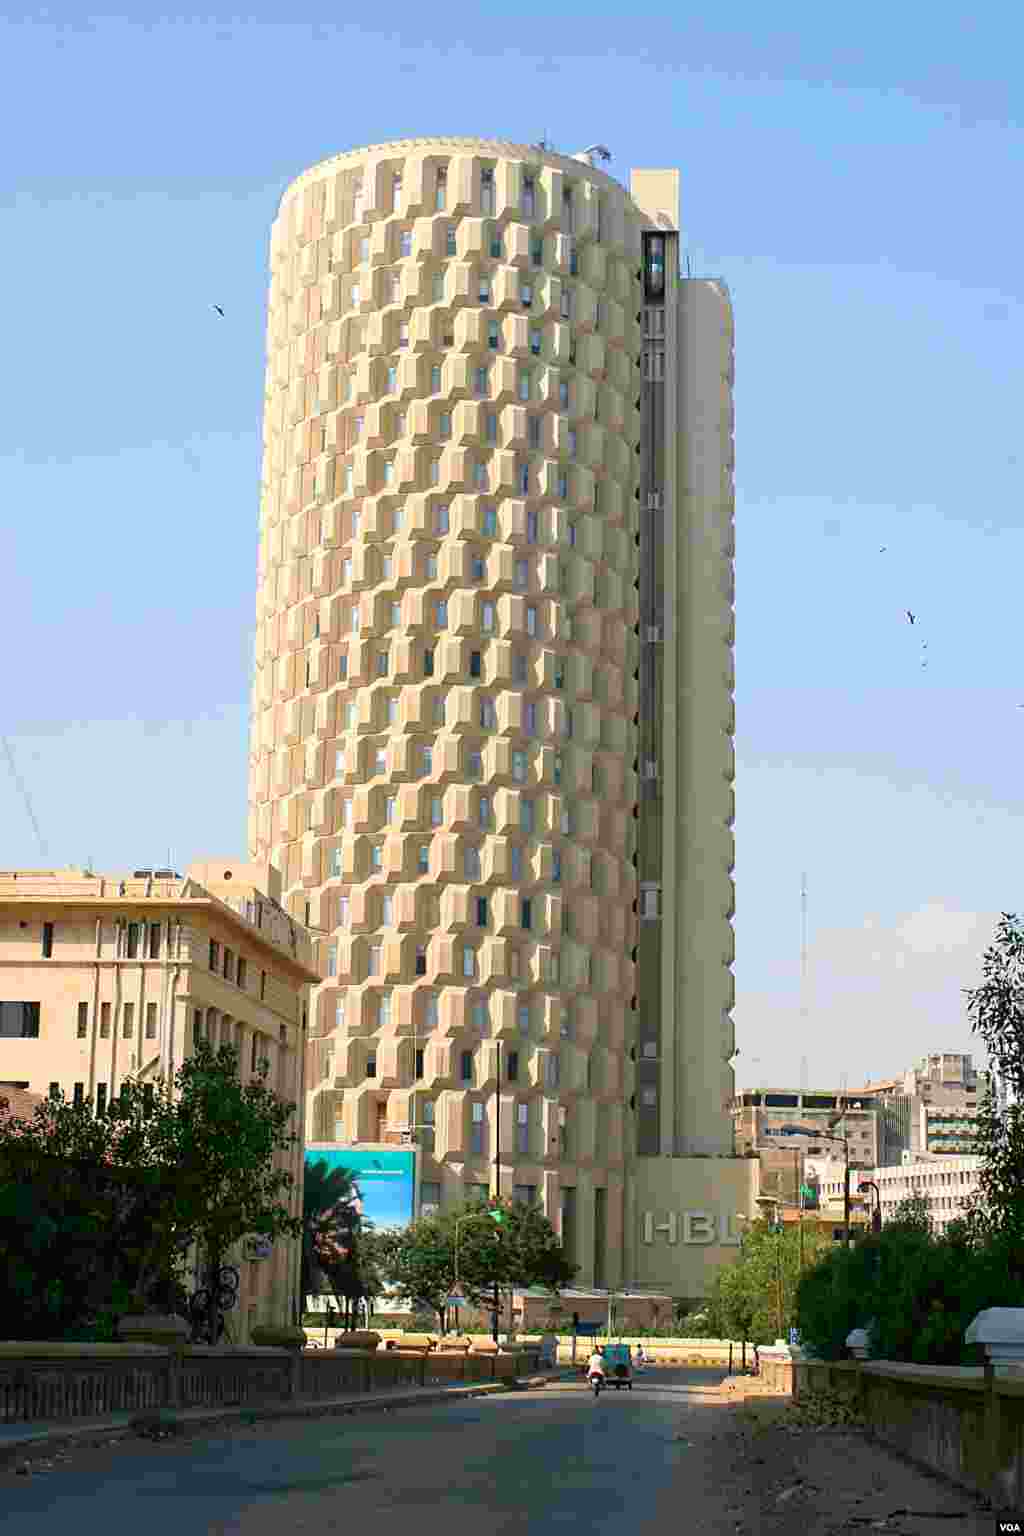 پچھلے ہزاریئے میں آئی آئی چندریگر روڈ پر سن 1963ء میں تعمیر ہونے والی حبیب بینک پلازہ کی 25منزلہ عمارت شہر قائد ہی کی نہیں بلکہ پاکستان کی سب سے اونچی عمارت شمار ہوتی تھی